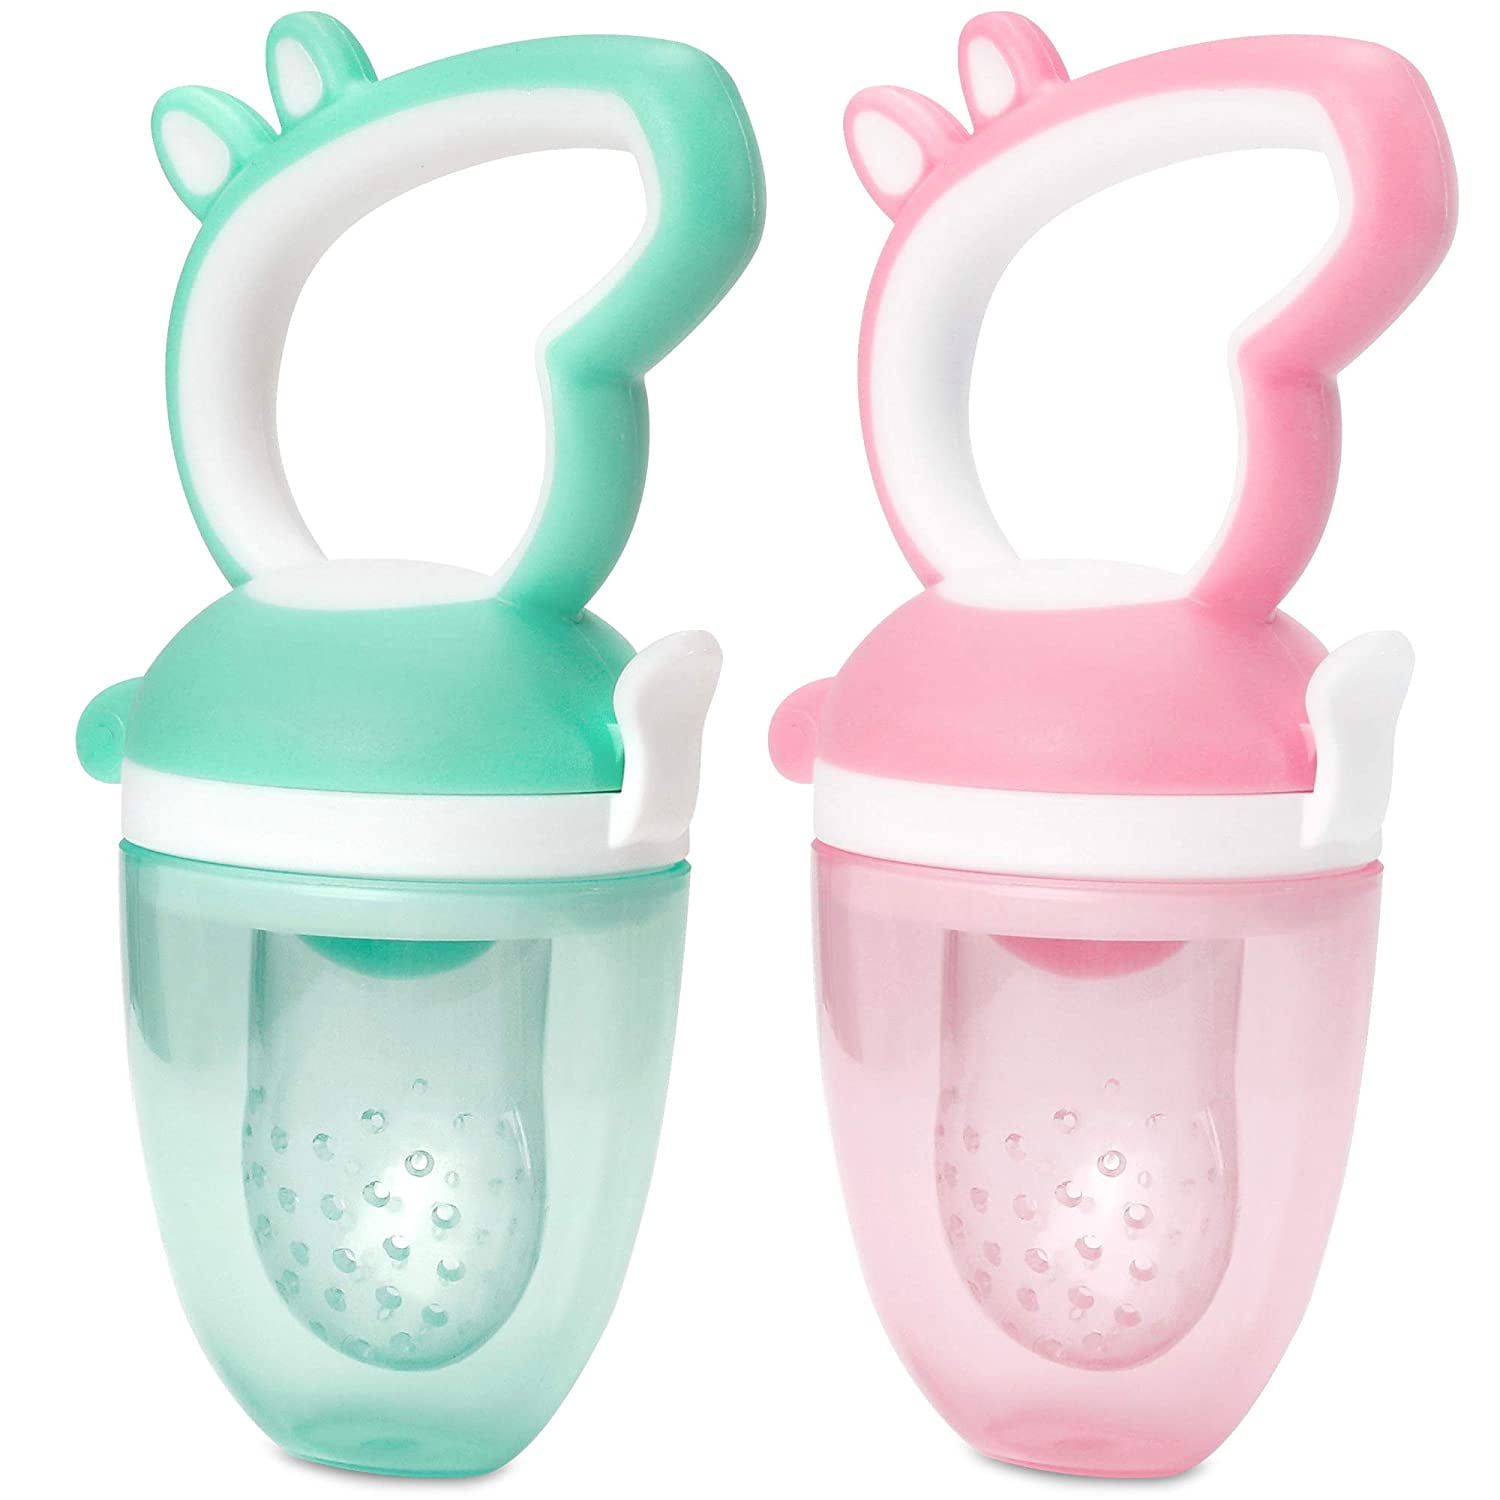 Baby Teething Teether Safe BPA Chew Toy peppa pig Teething toy 